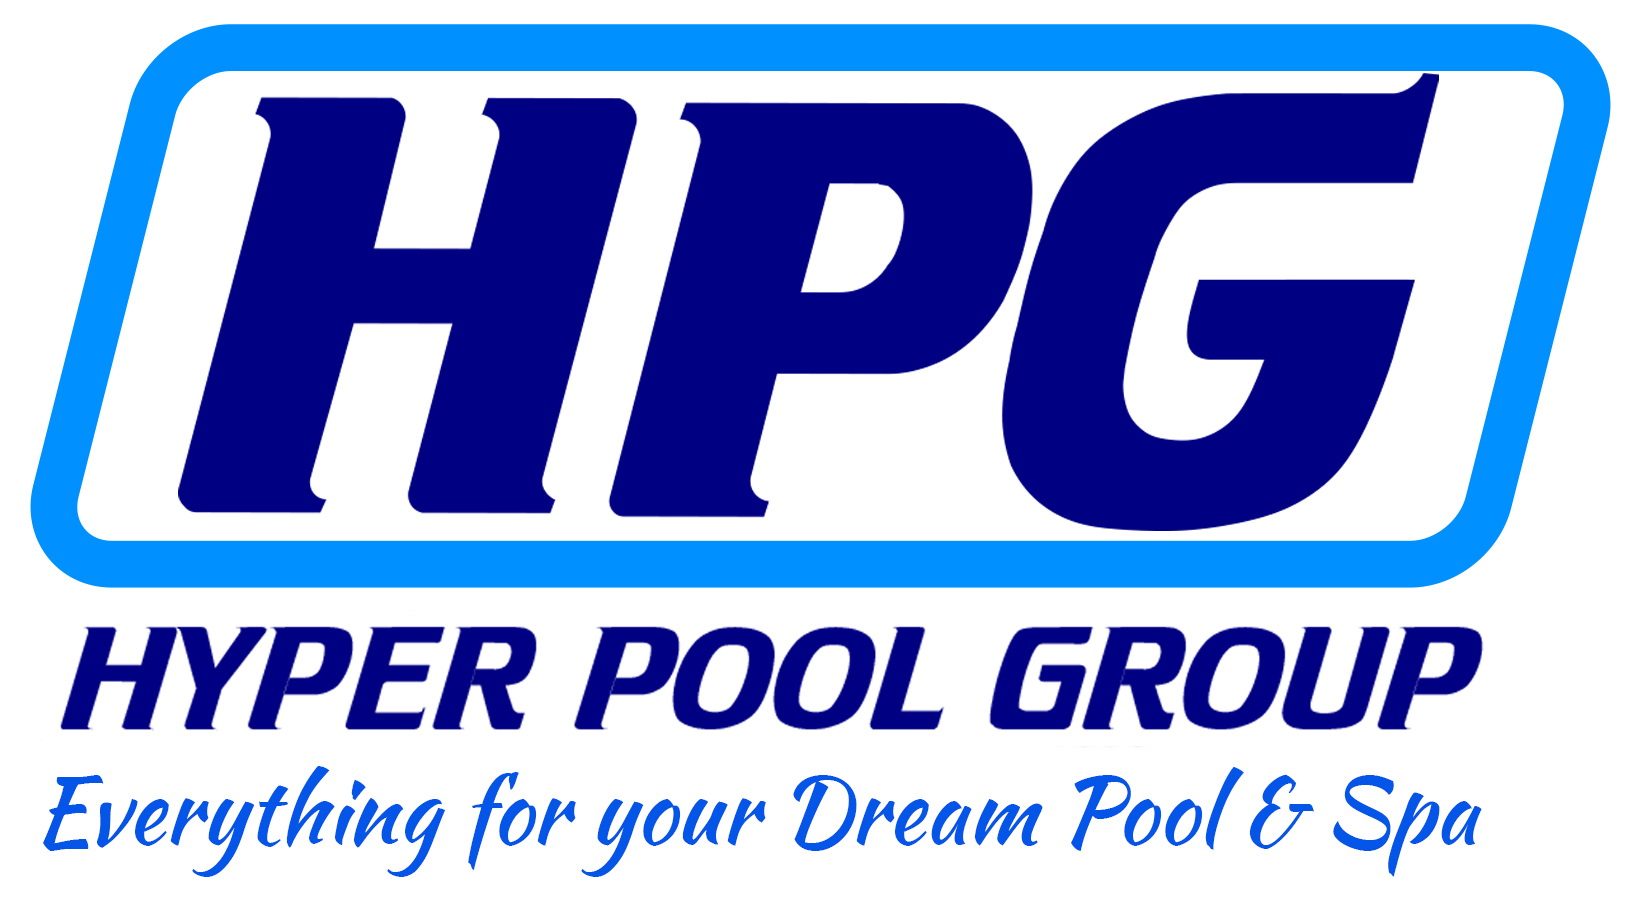 Hyper Pool Group